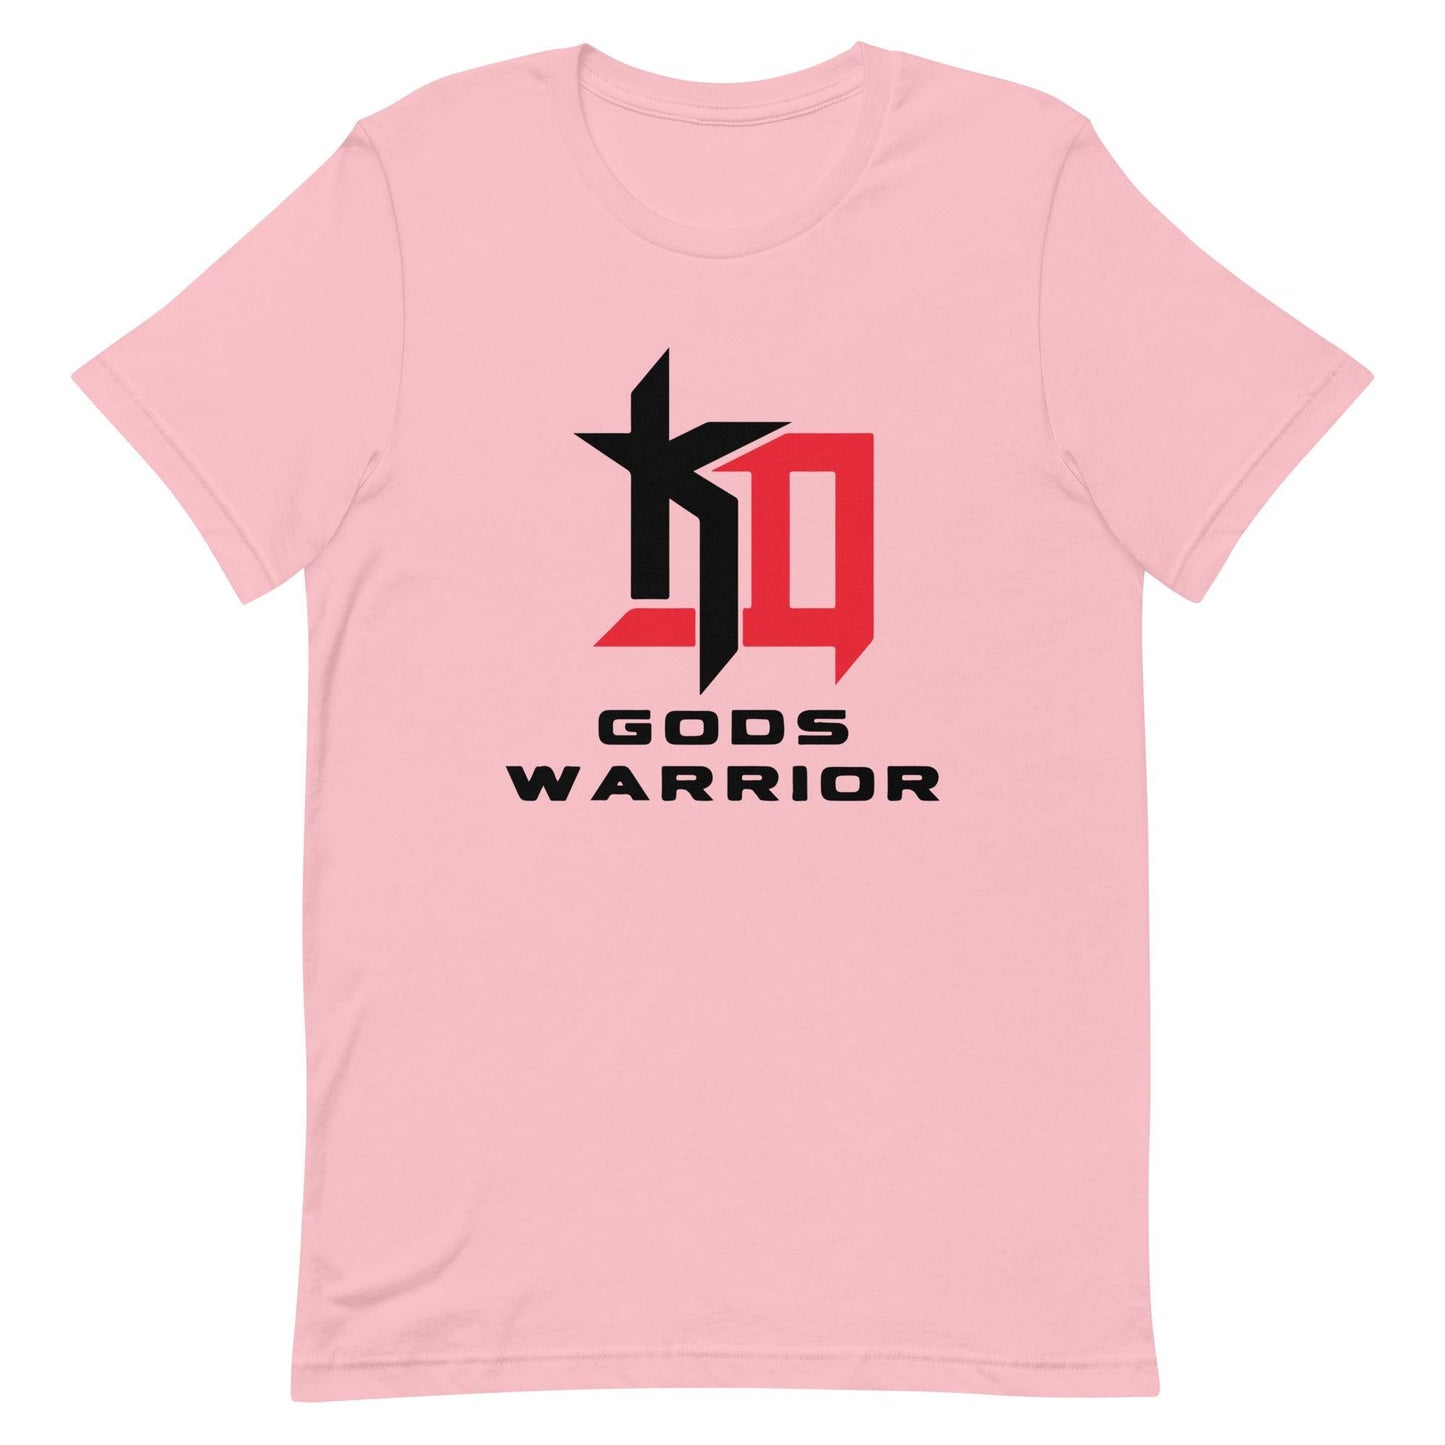 Kailon Davis "God's Warrior" t-shirt - Fan Arch